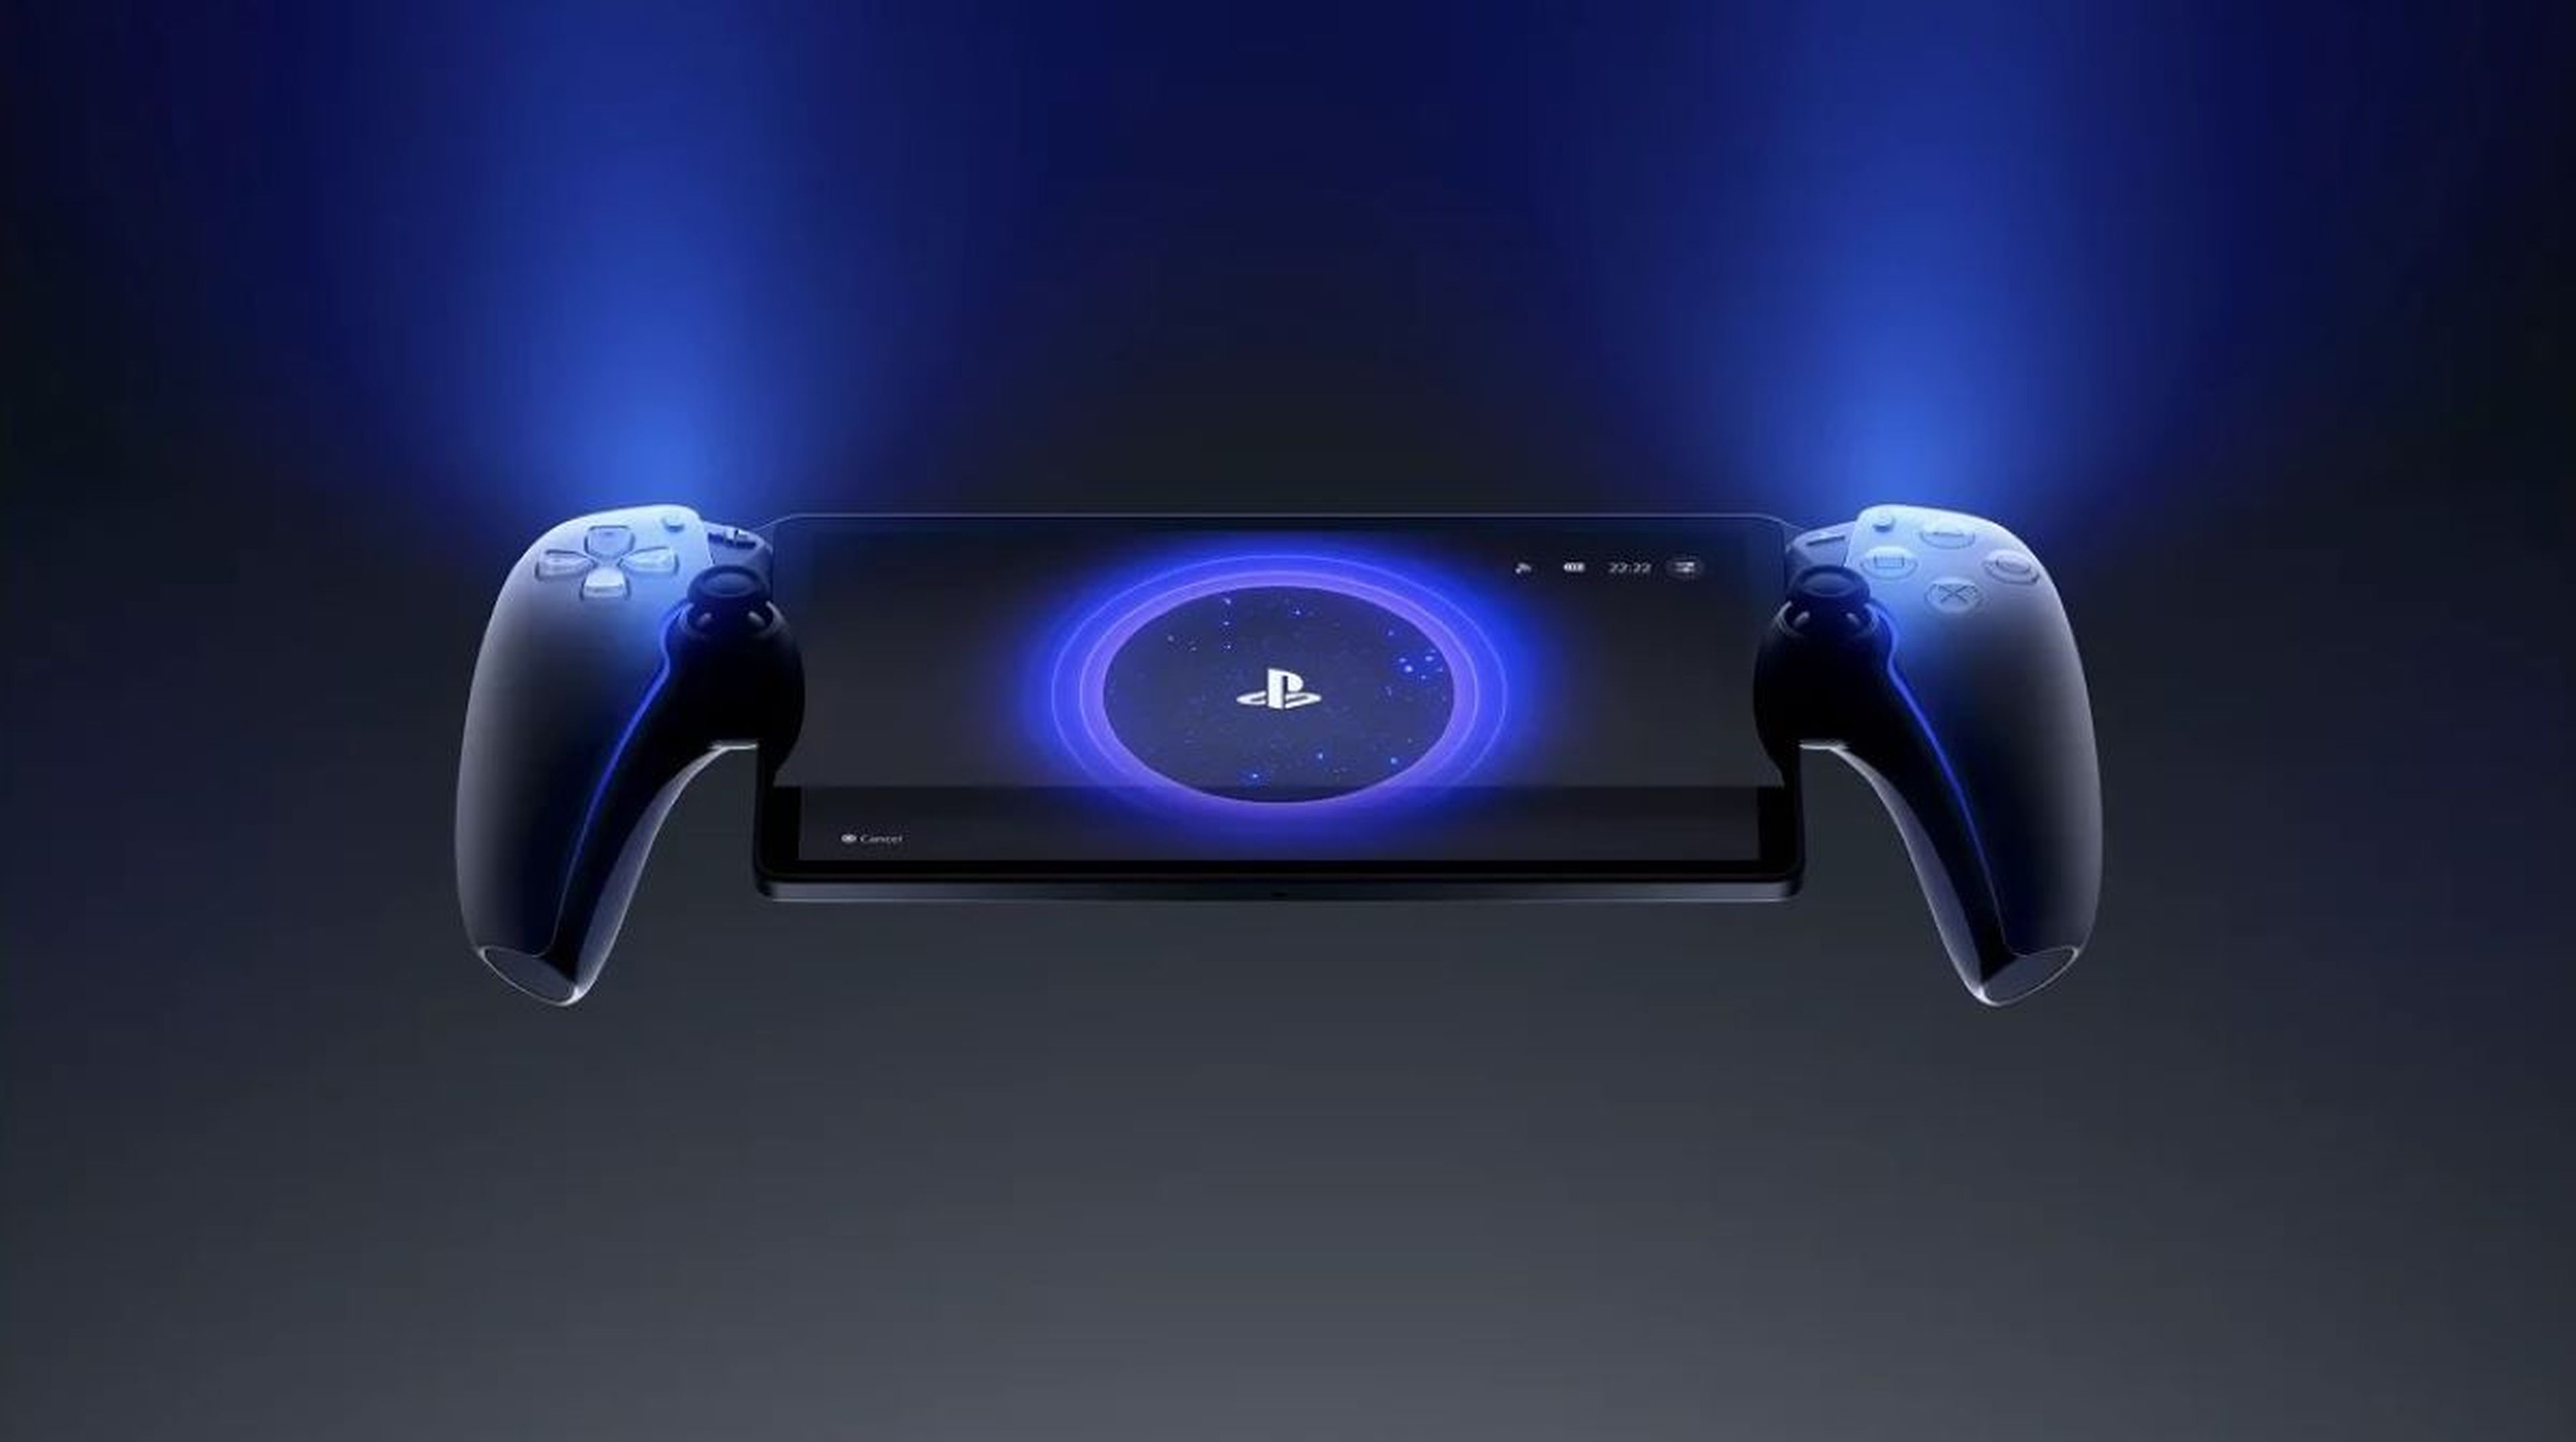 DRAGON BALL Z KAKAROT llegará a PlayStation 5 y XBOX Series X